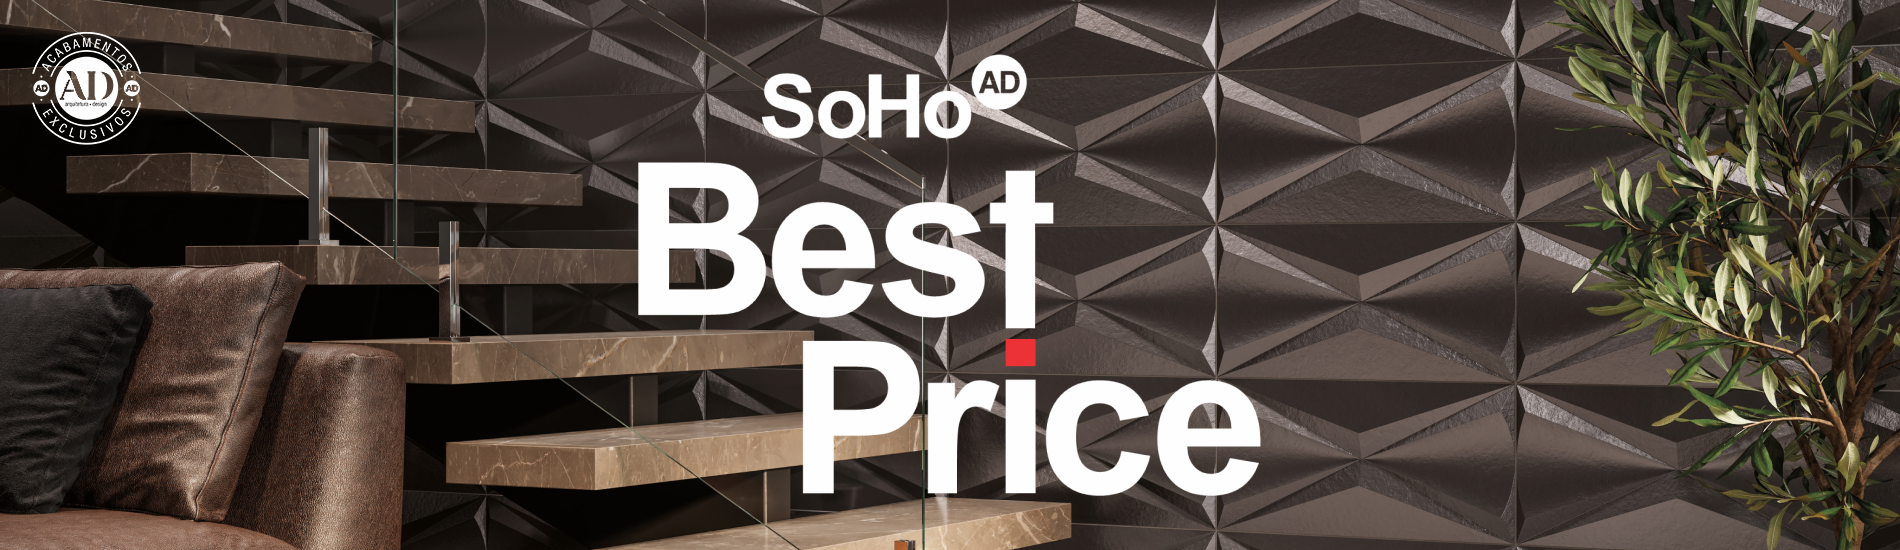 Background da campanha da SoHo Best Price